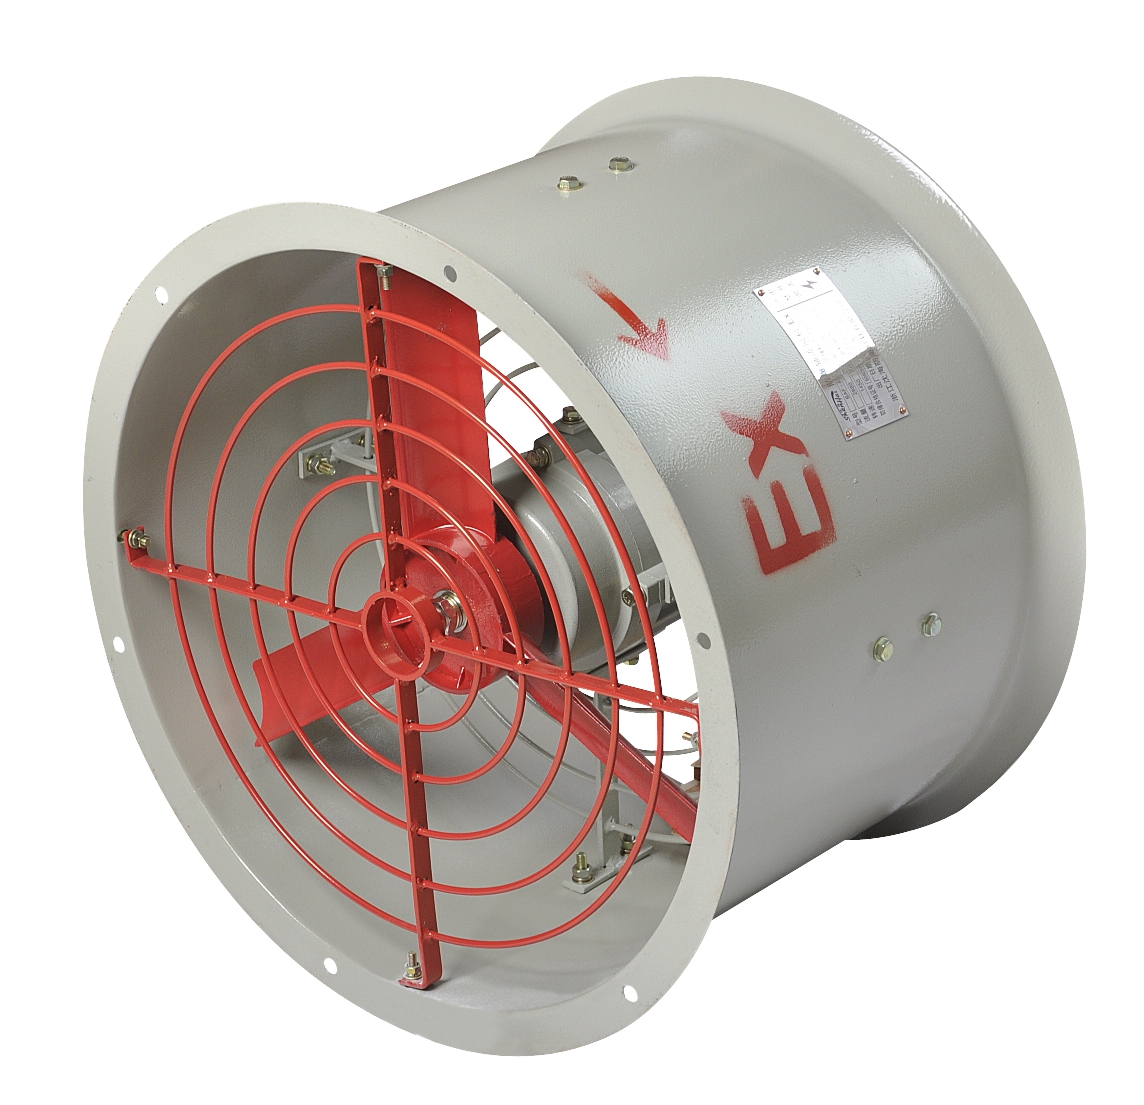 厂家直销BED52 -Ⅰ、Ⅱ 系列防爆免维护节能灯 LED 高效节能